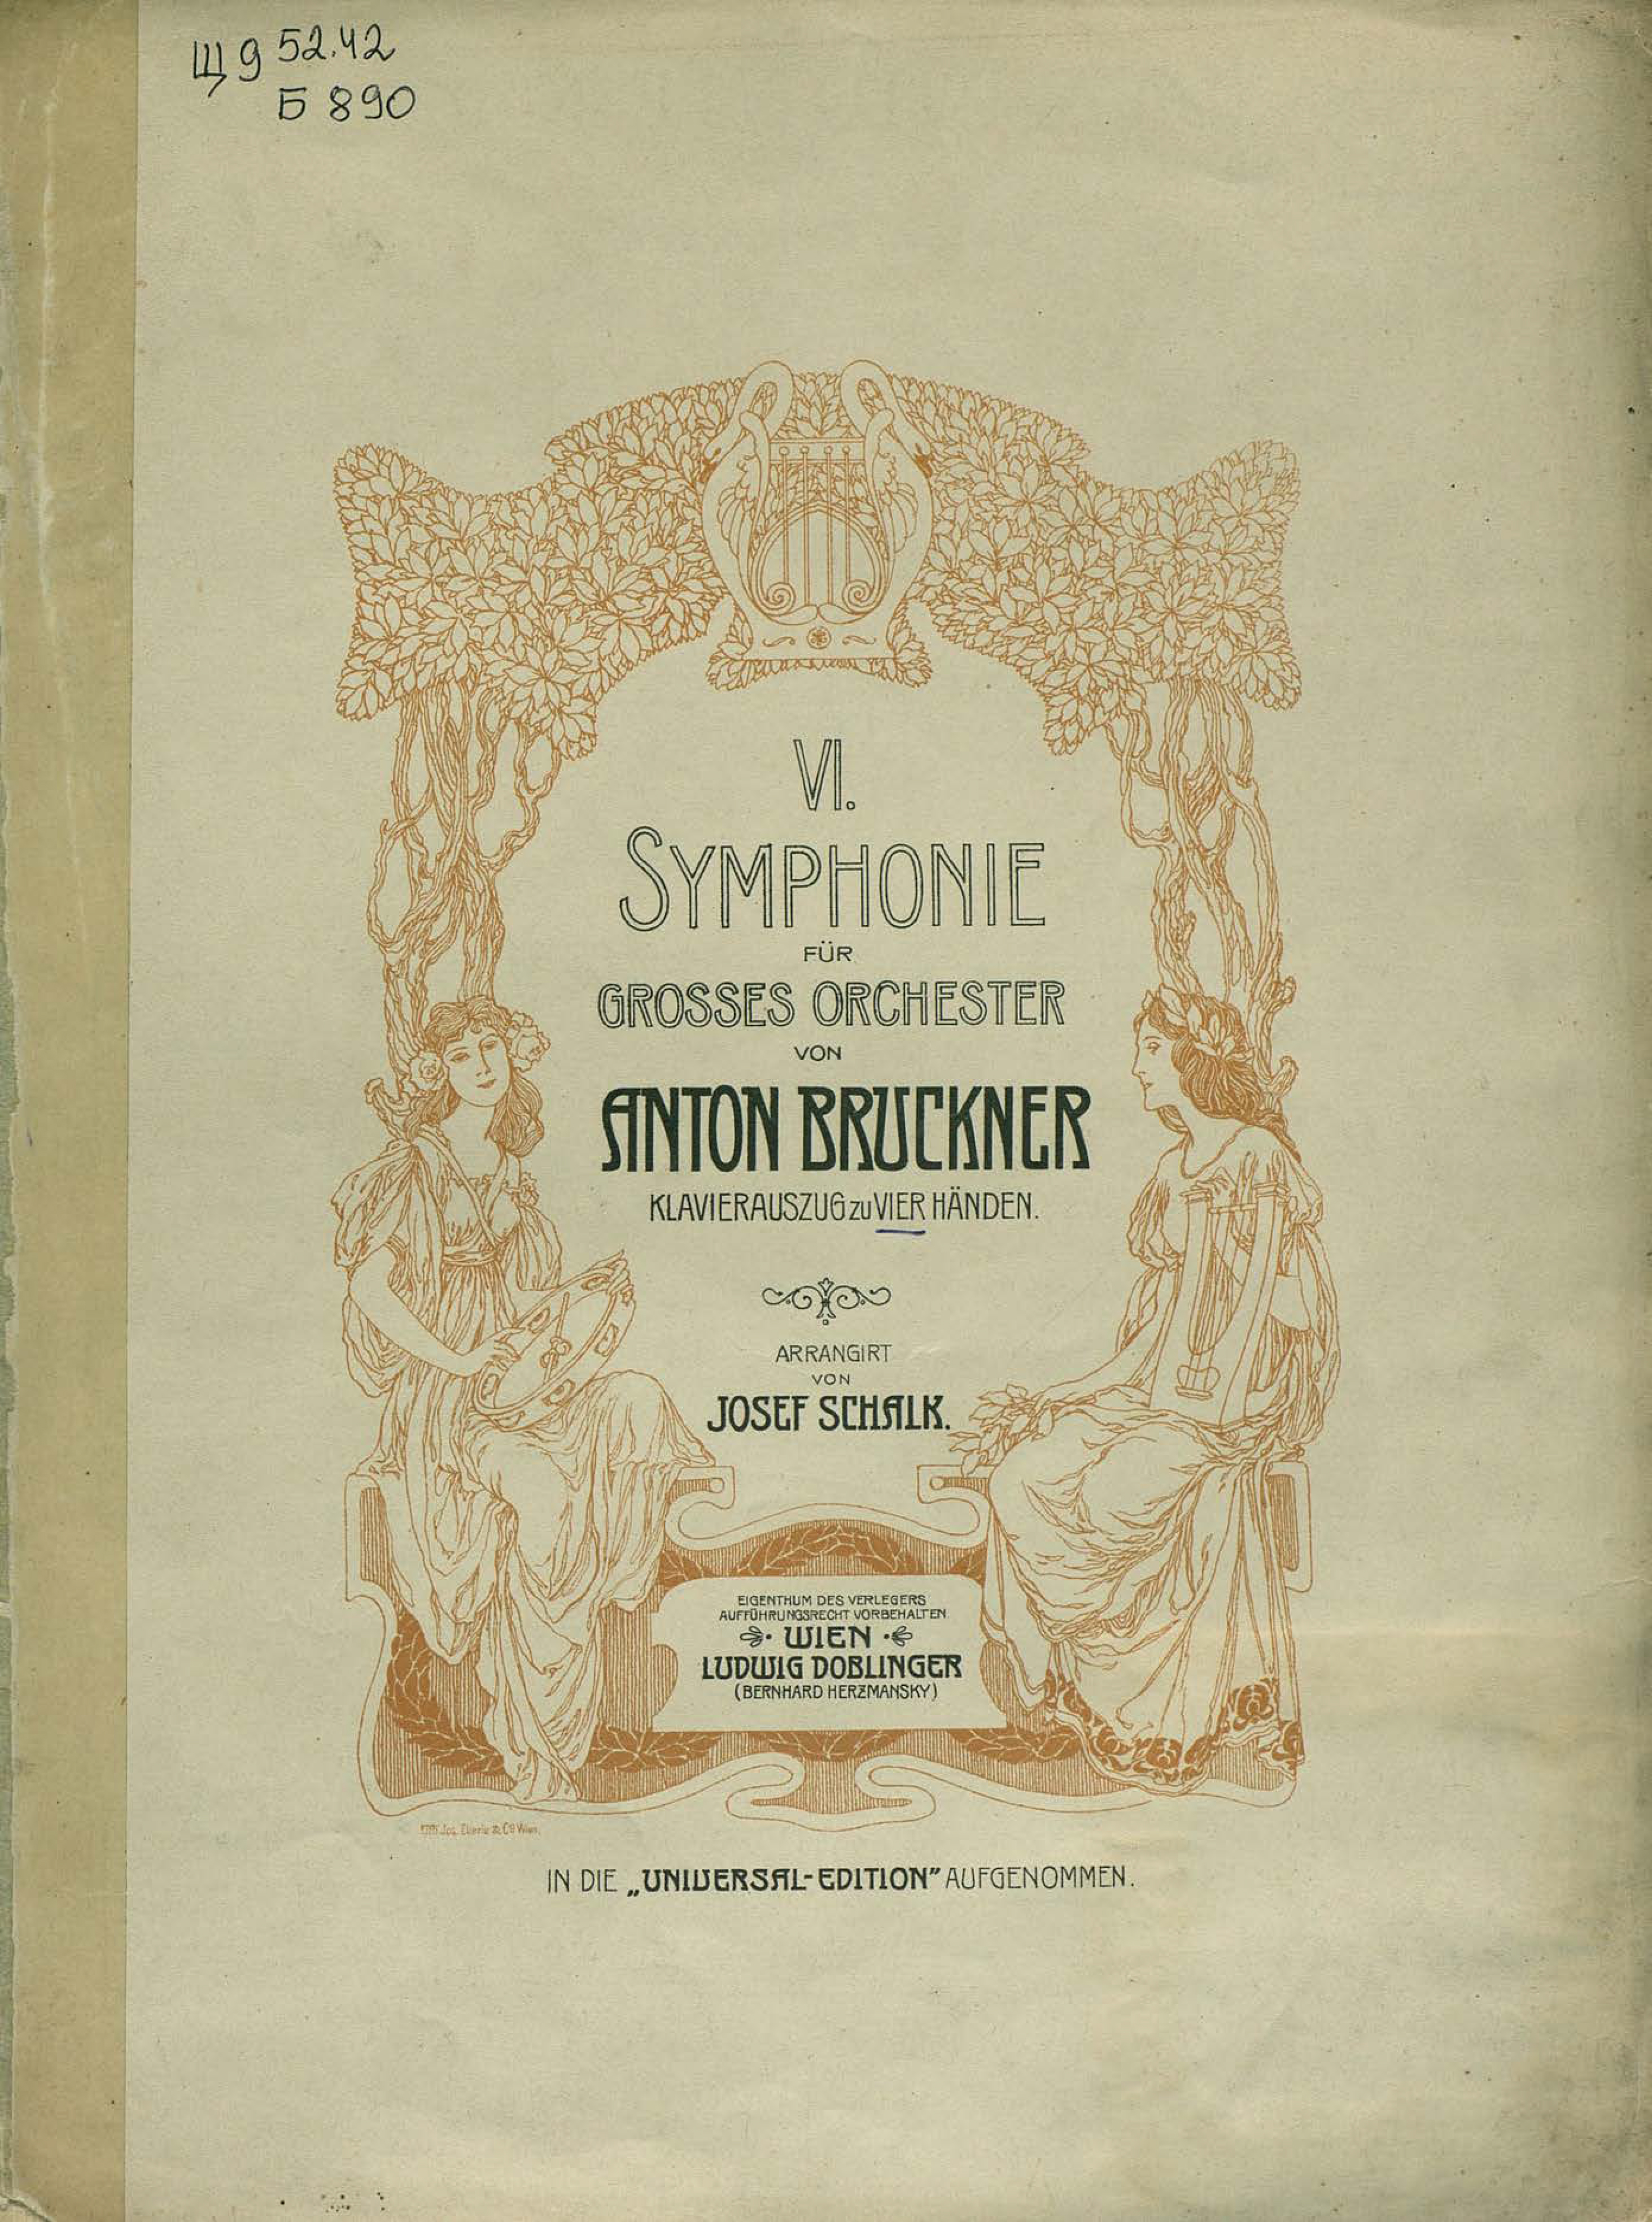 Symphonie№ 6 fur grosses orchester